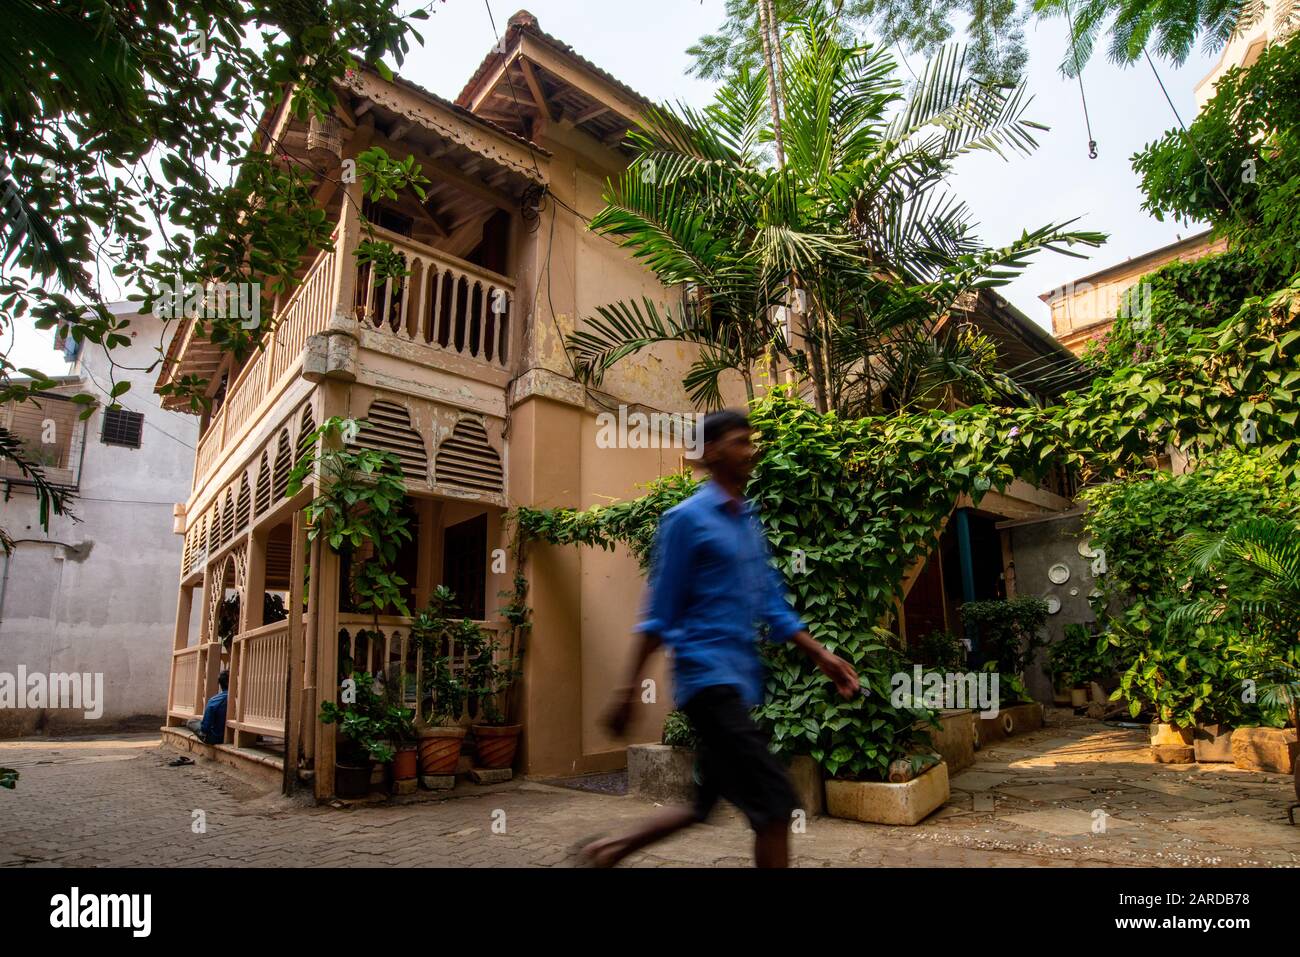 Ein historisches Holzhaus in einem alten Viertel von Mumbai mit einem nicht erkennbaren Mann, der an Indien vorbeigeht Stockfoto